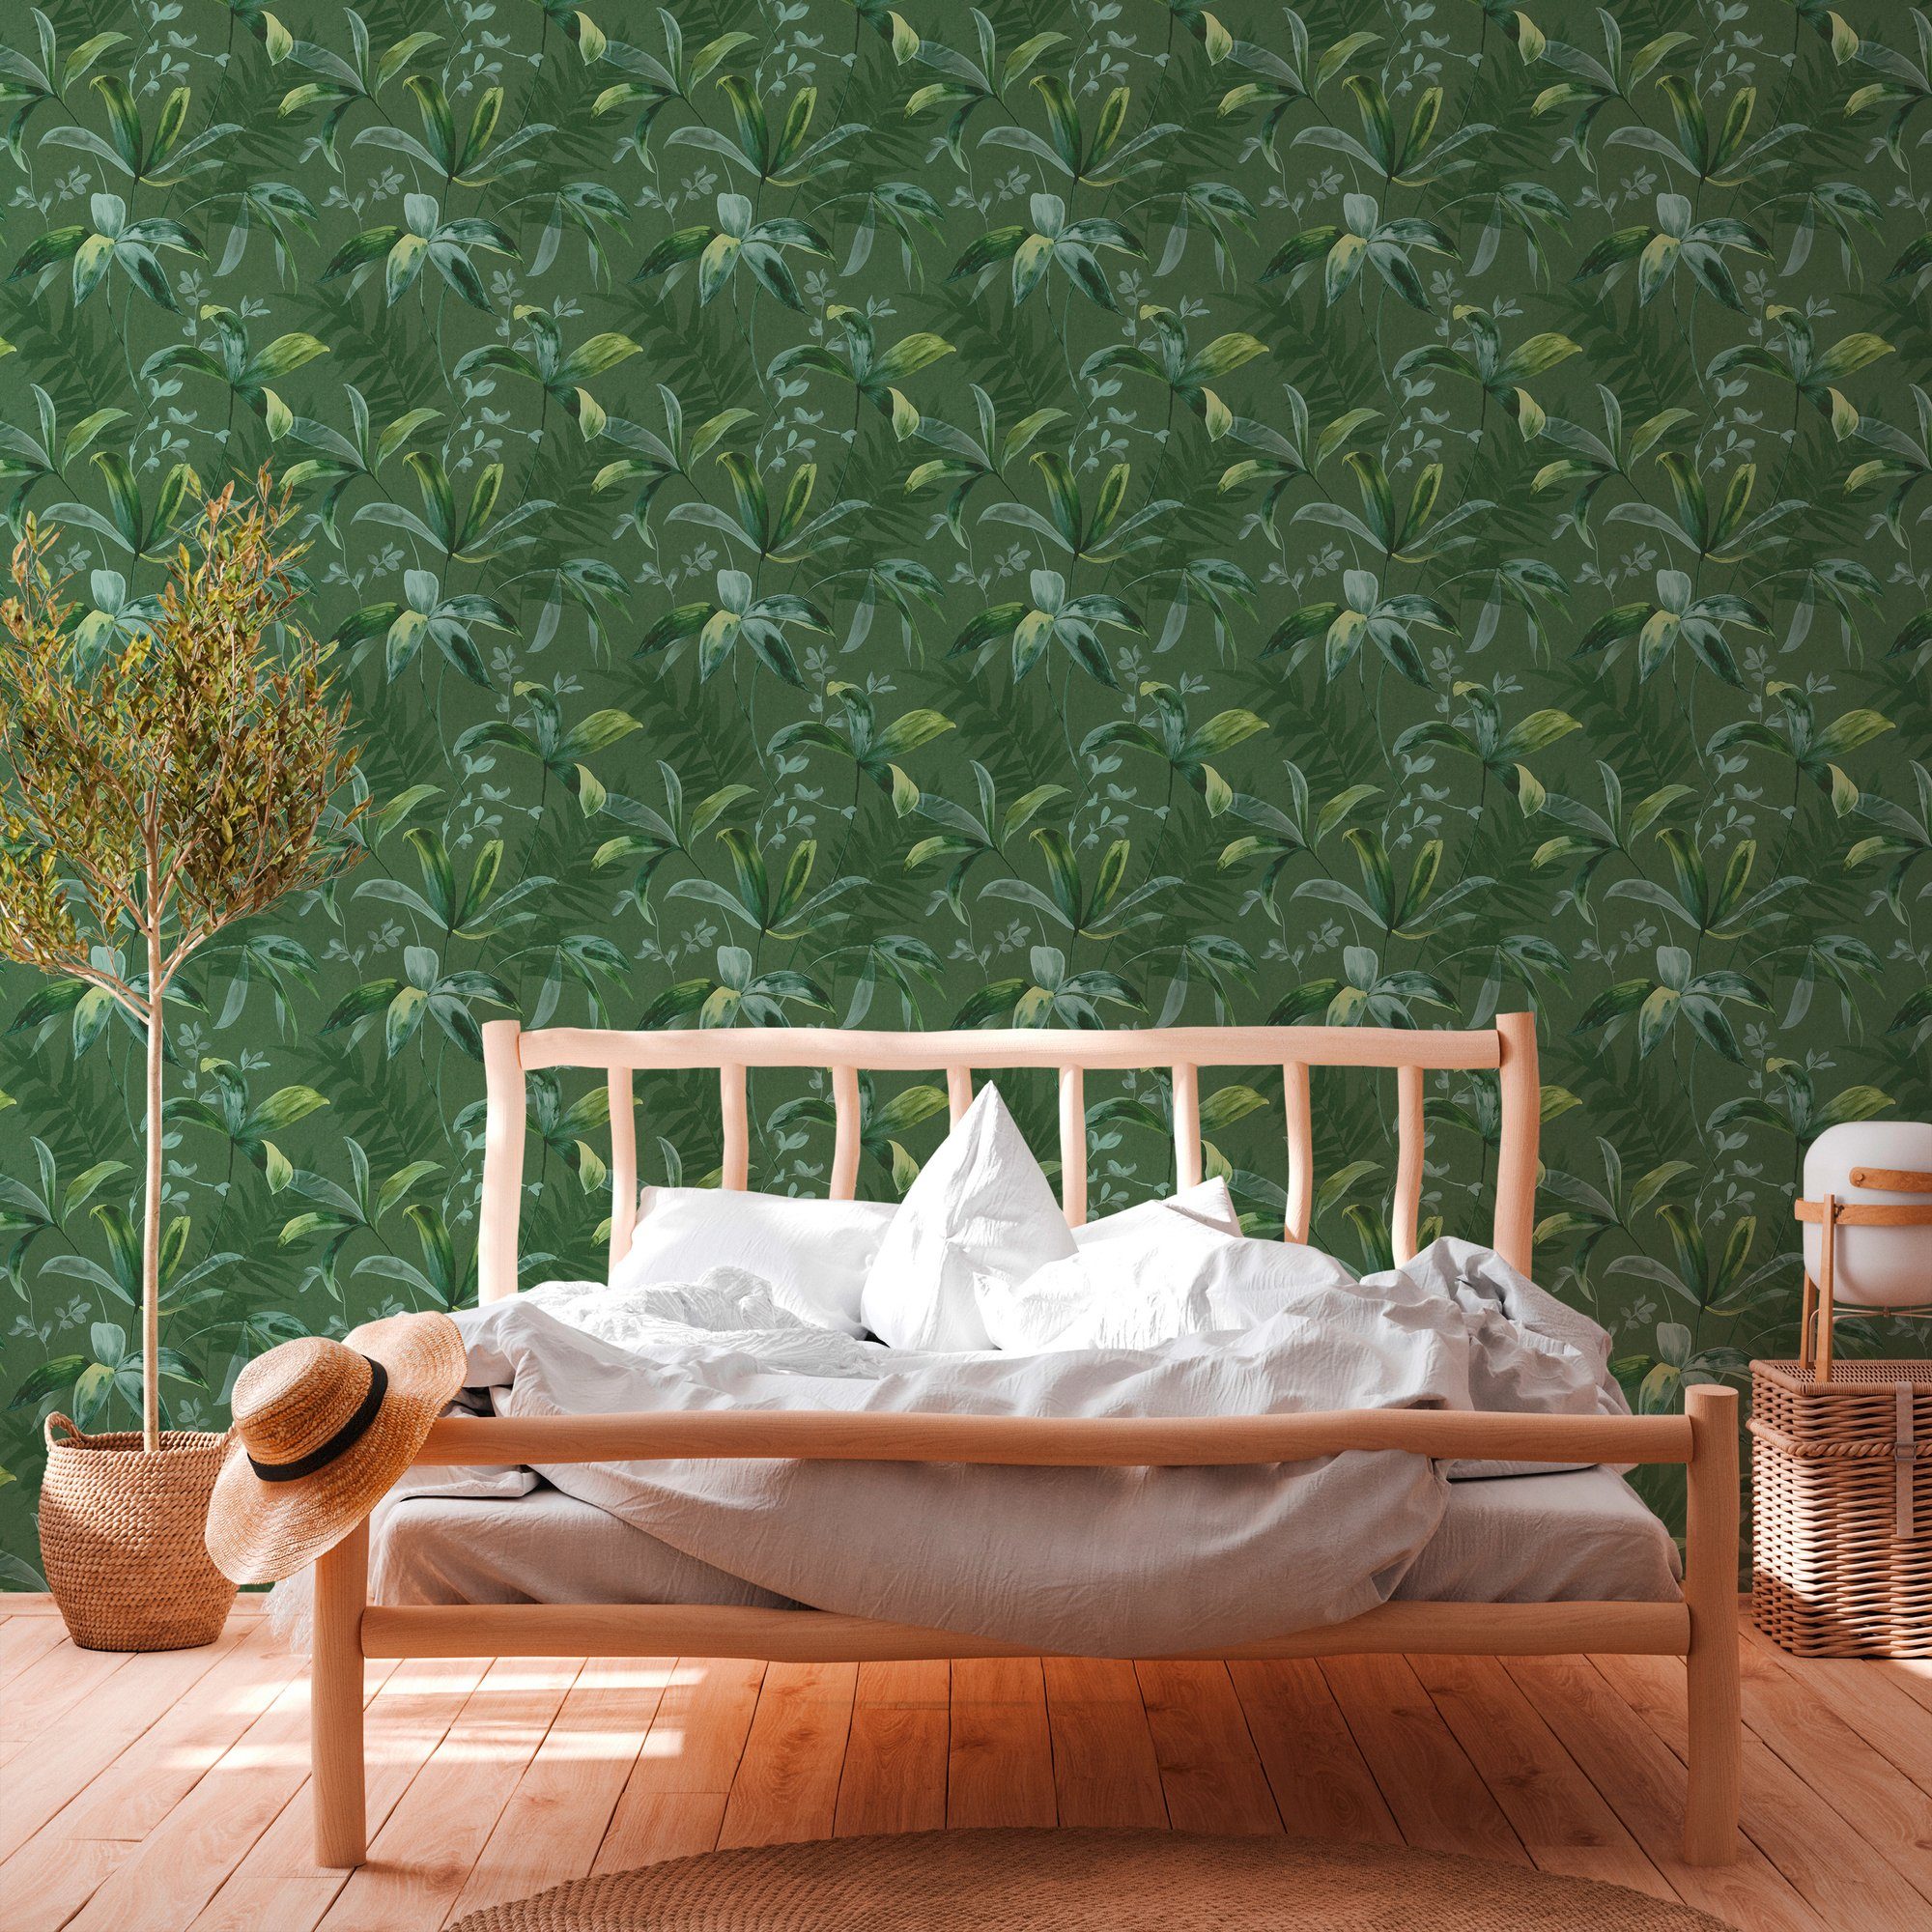 grün Tapete Palmentapete Dschungel tropisch, Jungle Paper glatt, Architects Chic, botanisch, Vliestapete floral,